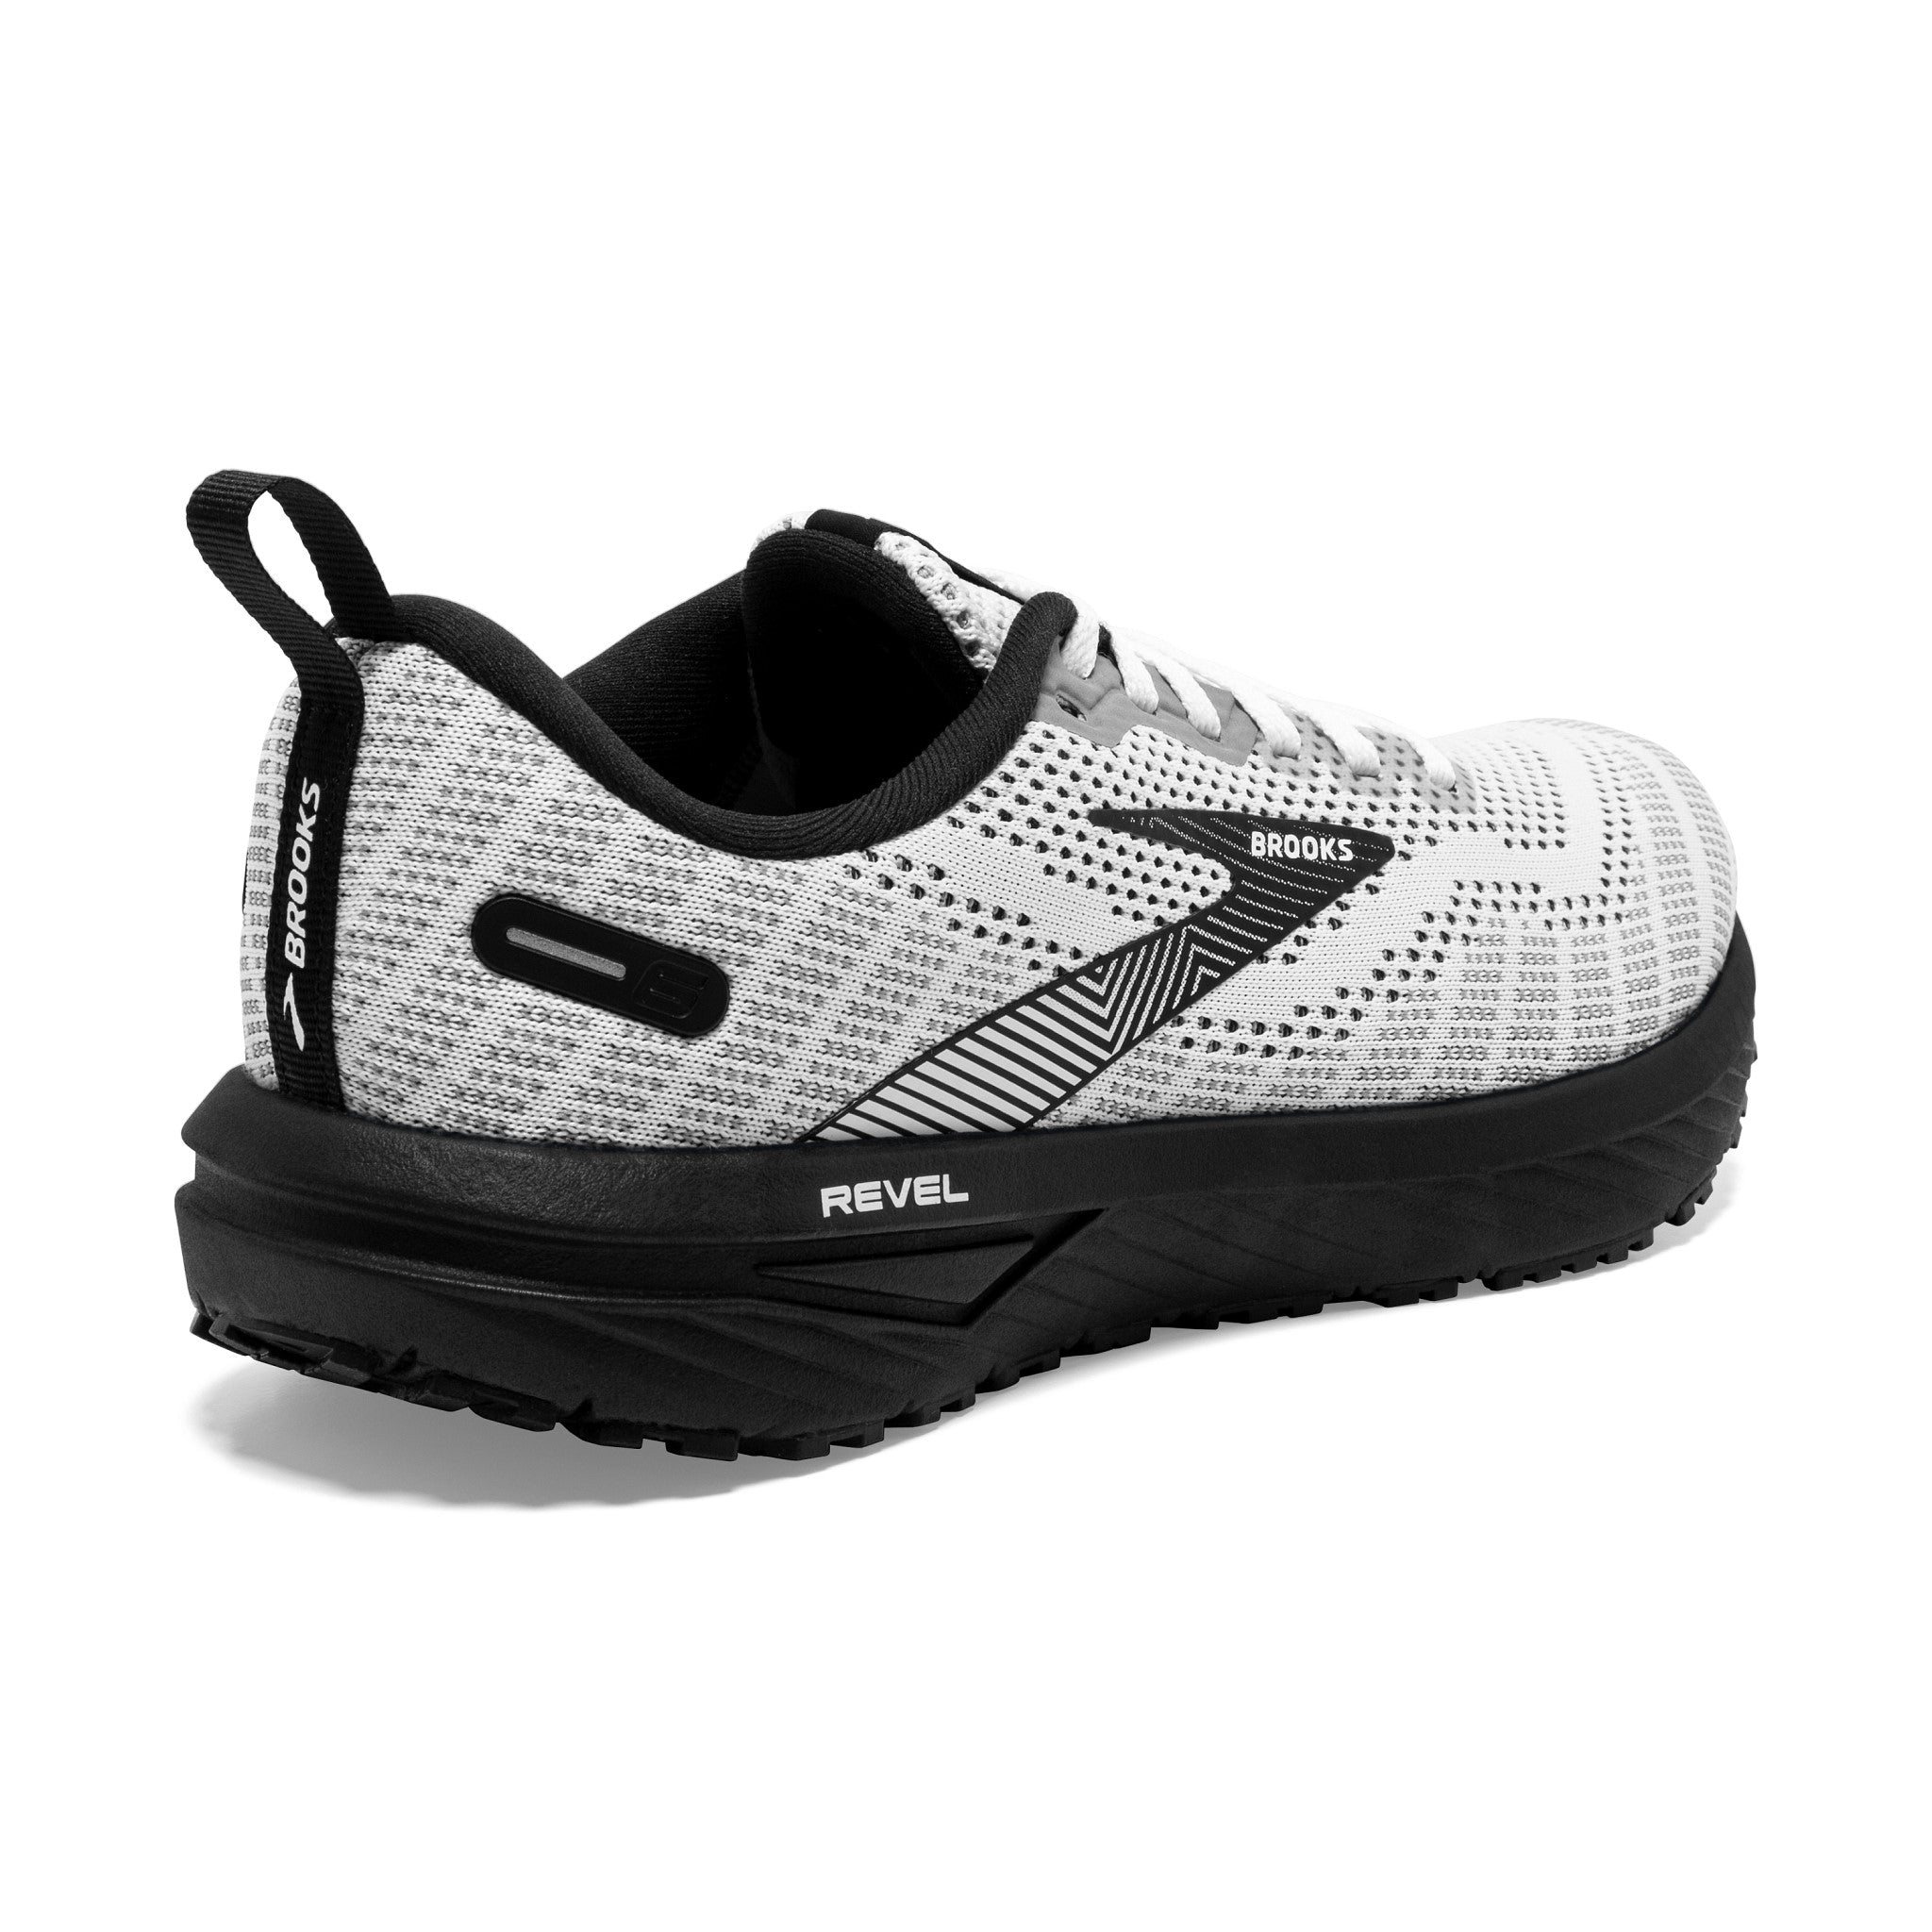 Revel 6 Men's Shoes, Men's Running Shoes